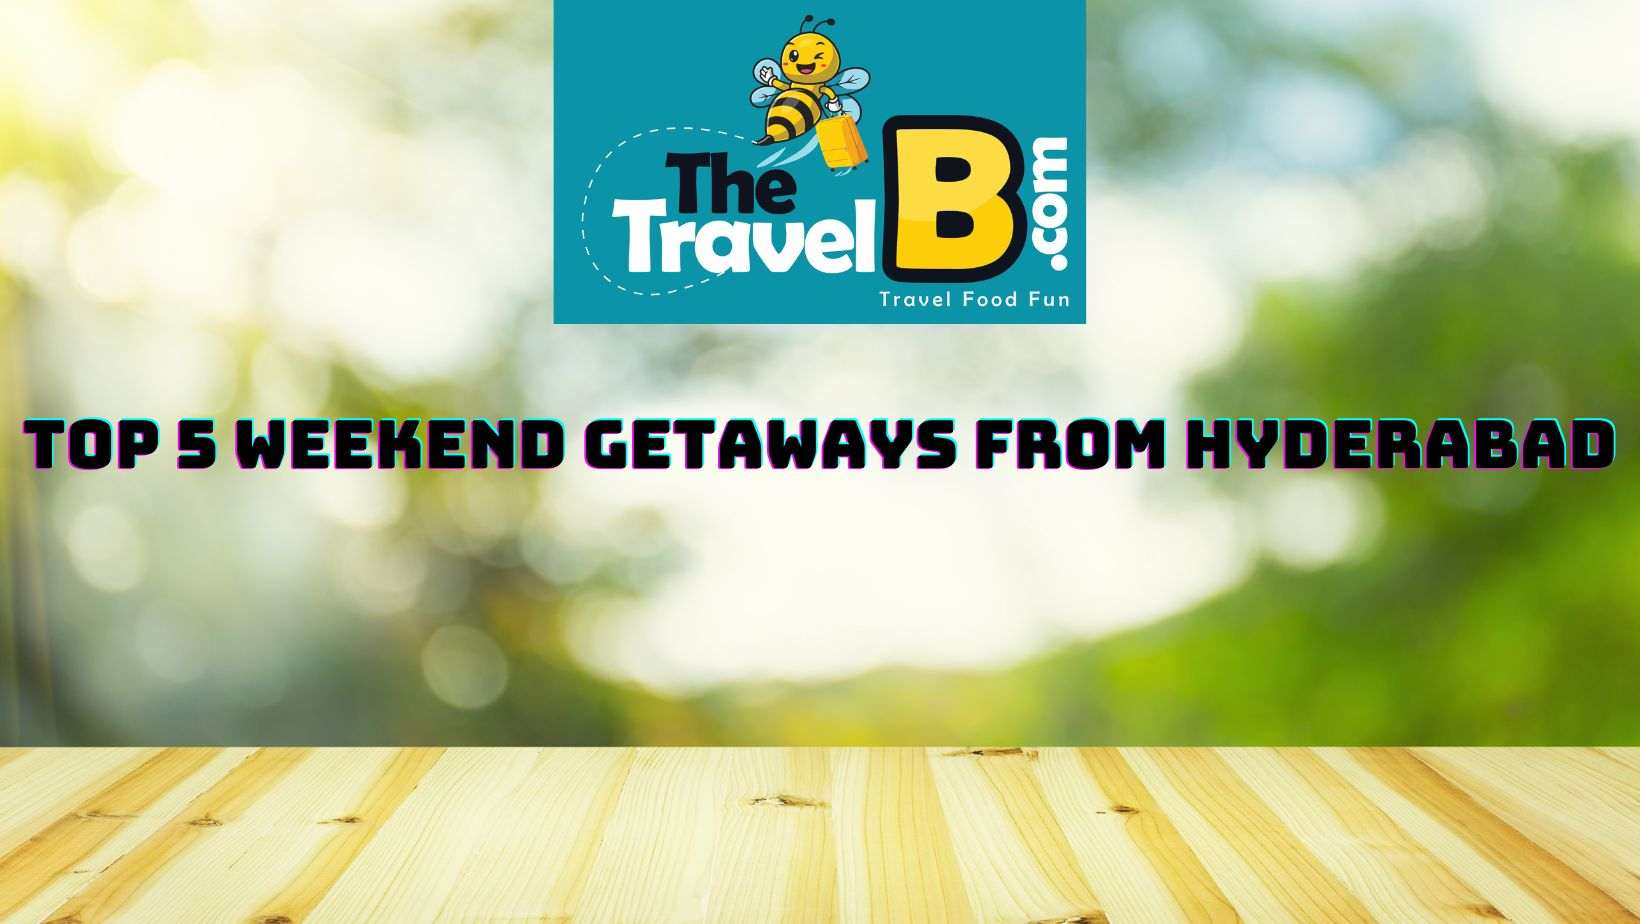 Top 5 Weekend Getaways from Hyderabad